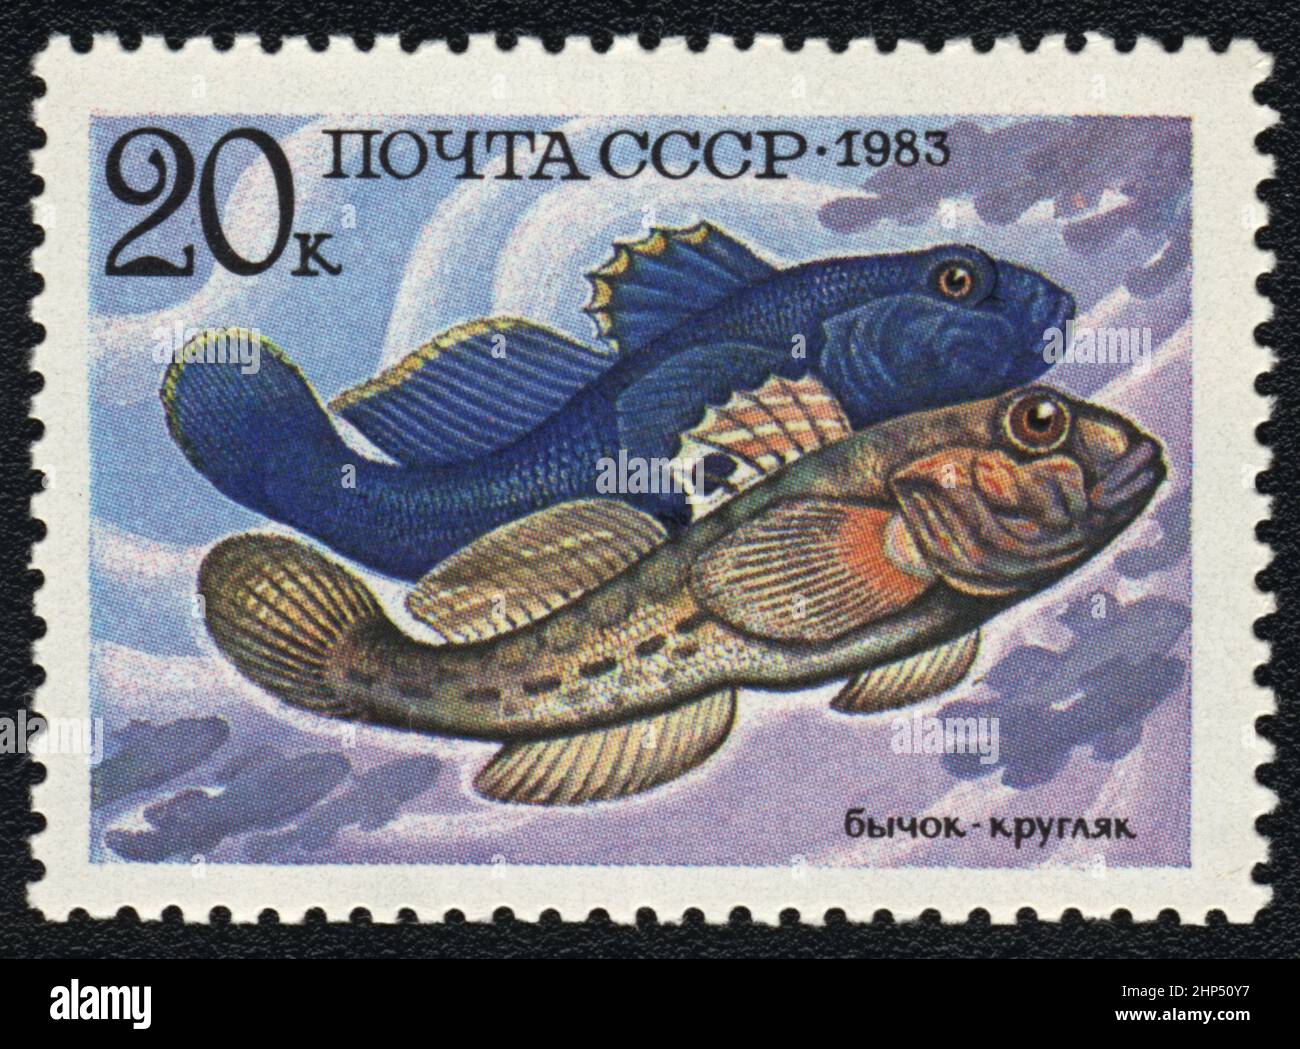 Timbre-poste avec image de poisson bouée ronde (Neogobius melanostomus), URSS, 1983 Banque D'Images